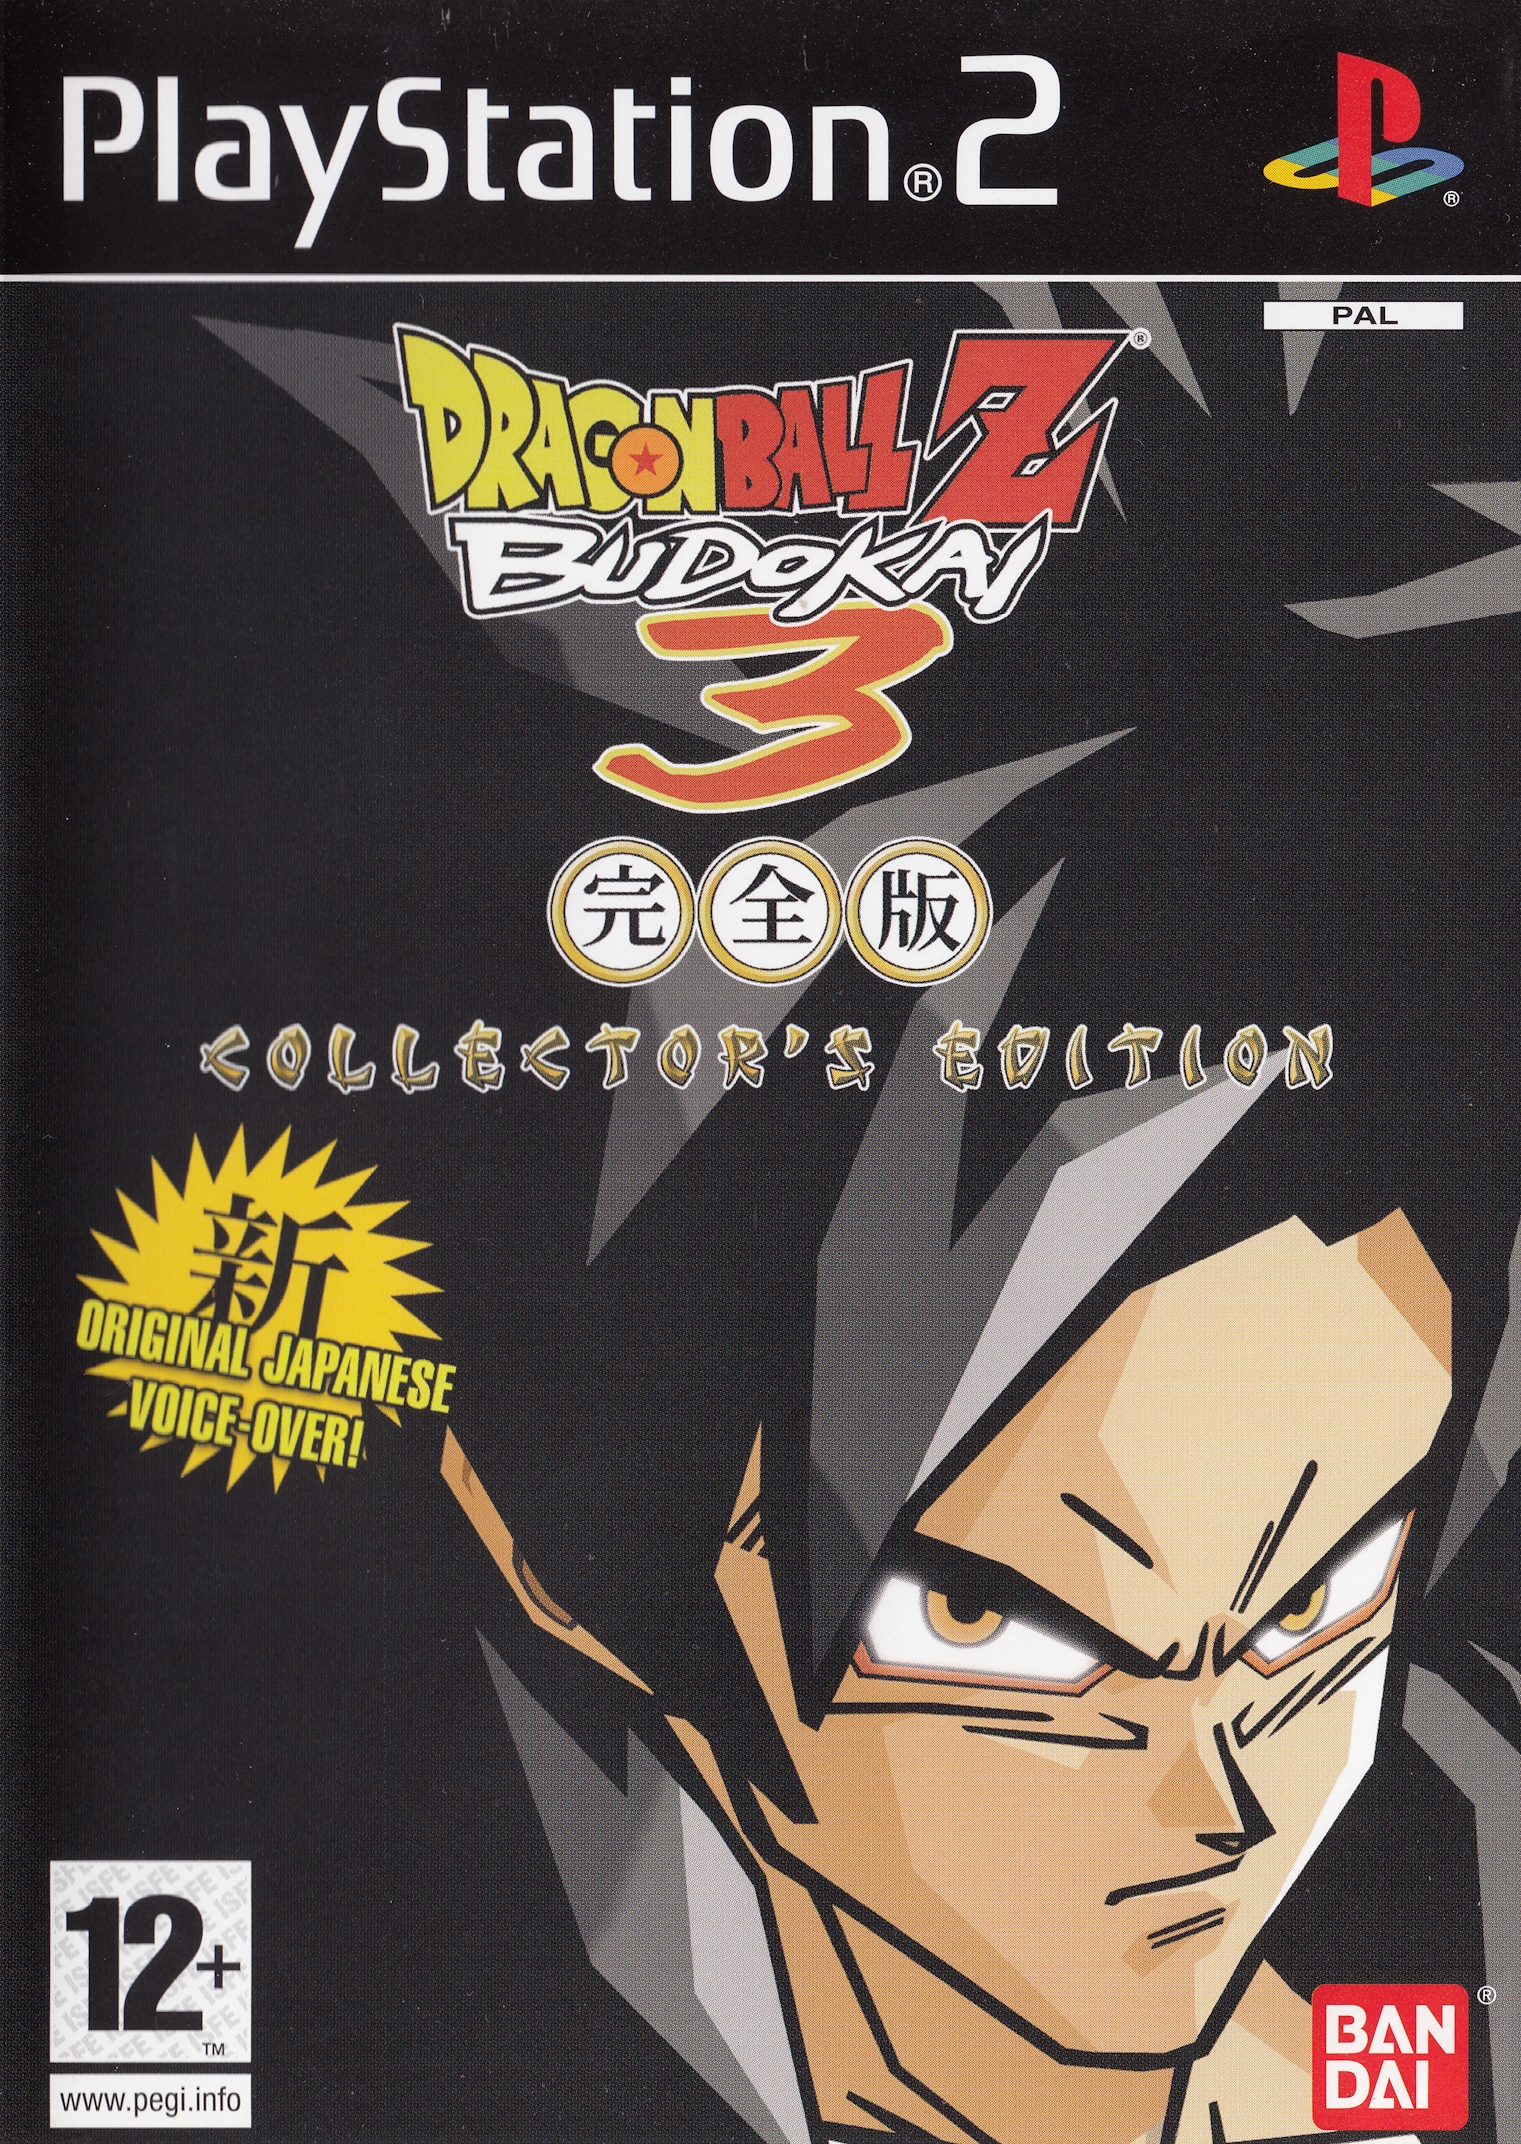 Dragon Ball Z: Budokai 3 Games